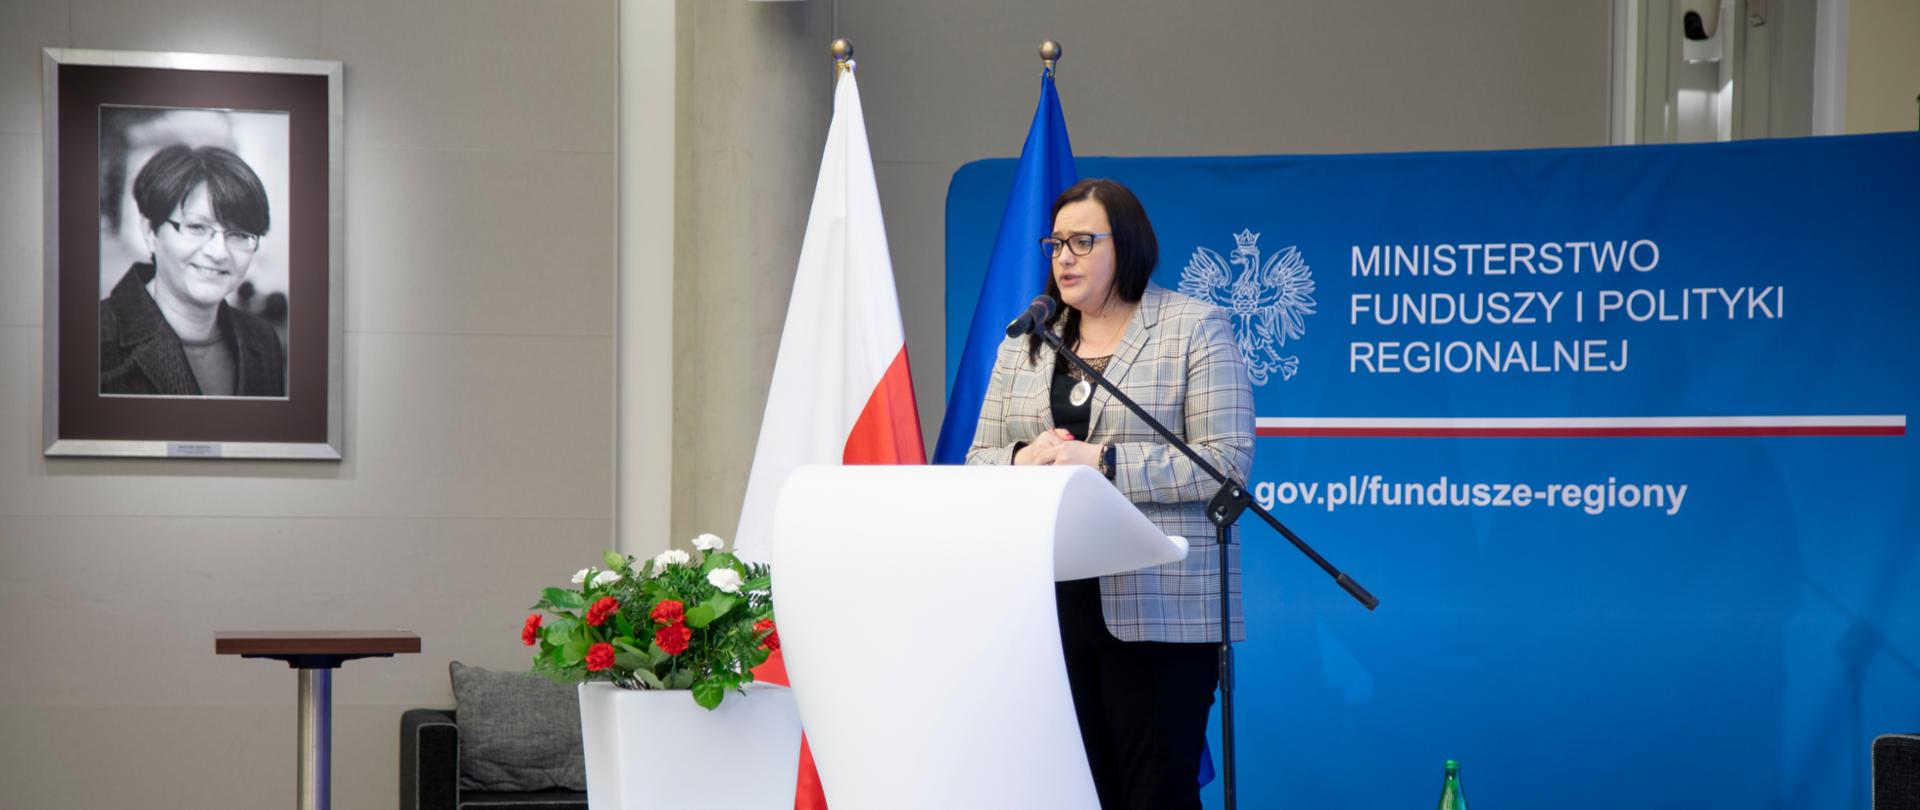 Wiceminister Małgorzata Jarosińska-Jedynak stoi na scenie, za mównicą, mówi do mikrofonu, za nią ścianka z logo MFiPR